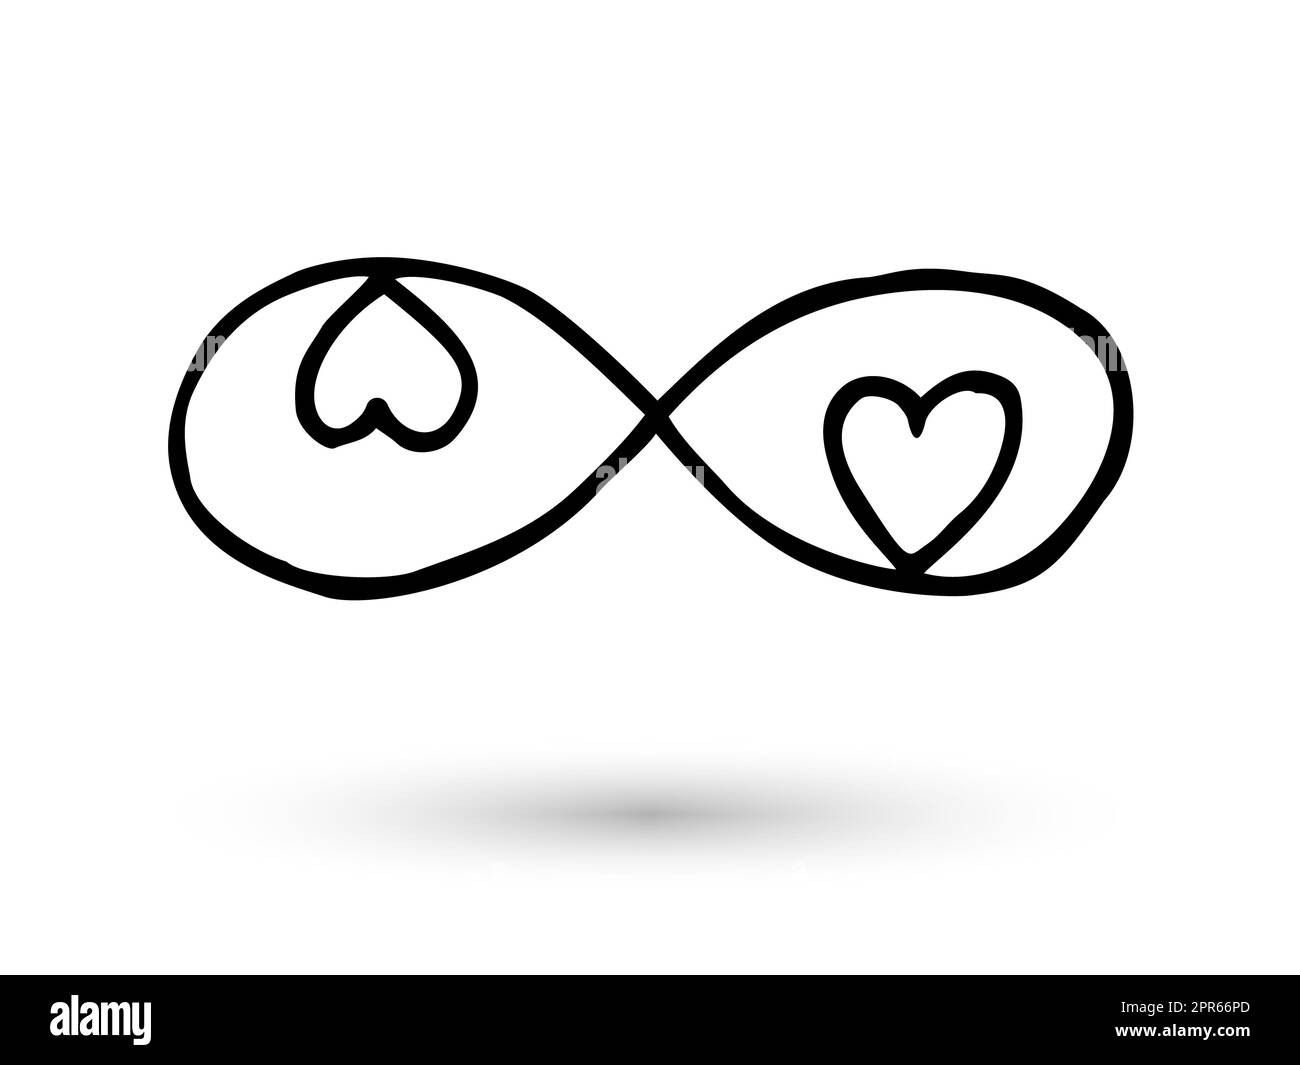 Unendlichkeits-Symbol mit Herzen. Symbol von Hand mit Tintenpinsel gezeichnet. Moderner Doodle mit Umriss. Unendliche Liebe, Hochzeit, Verlobungskonzept. Grafikdesign Ele Stockfoto